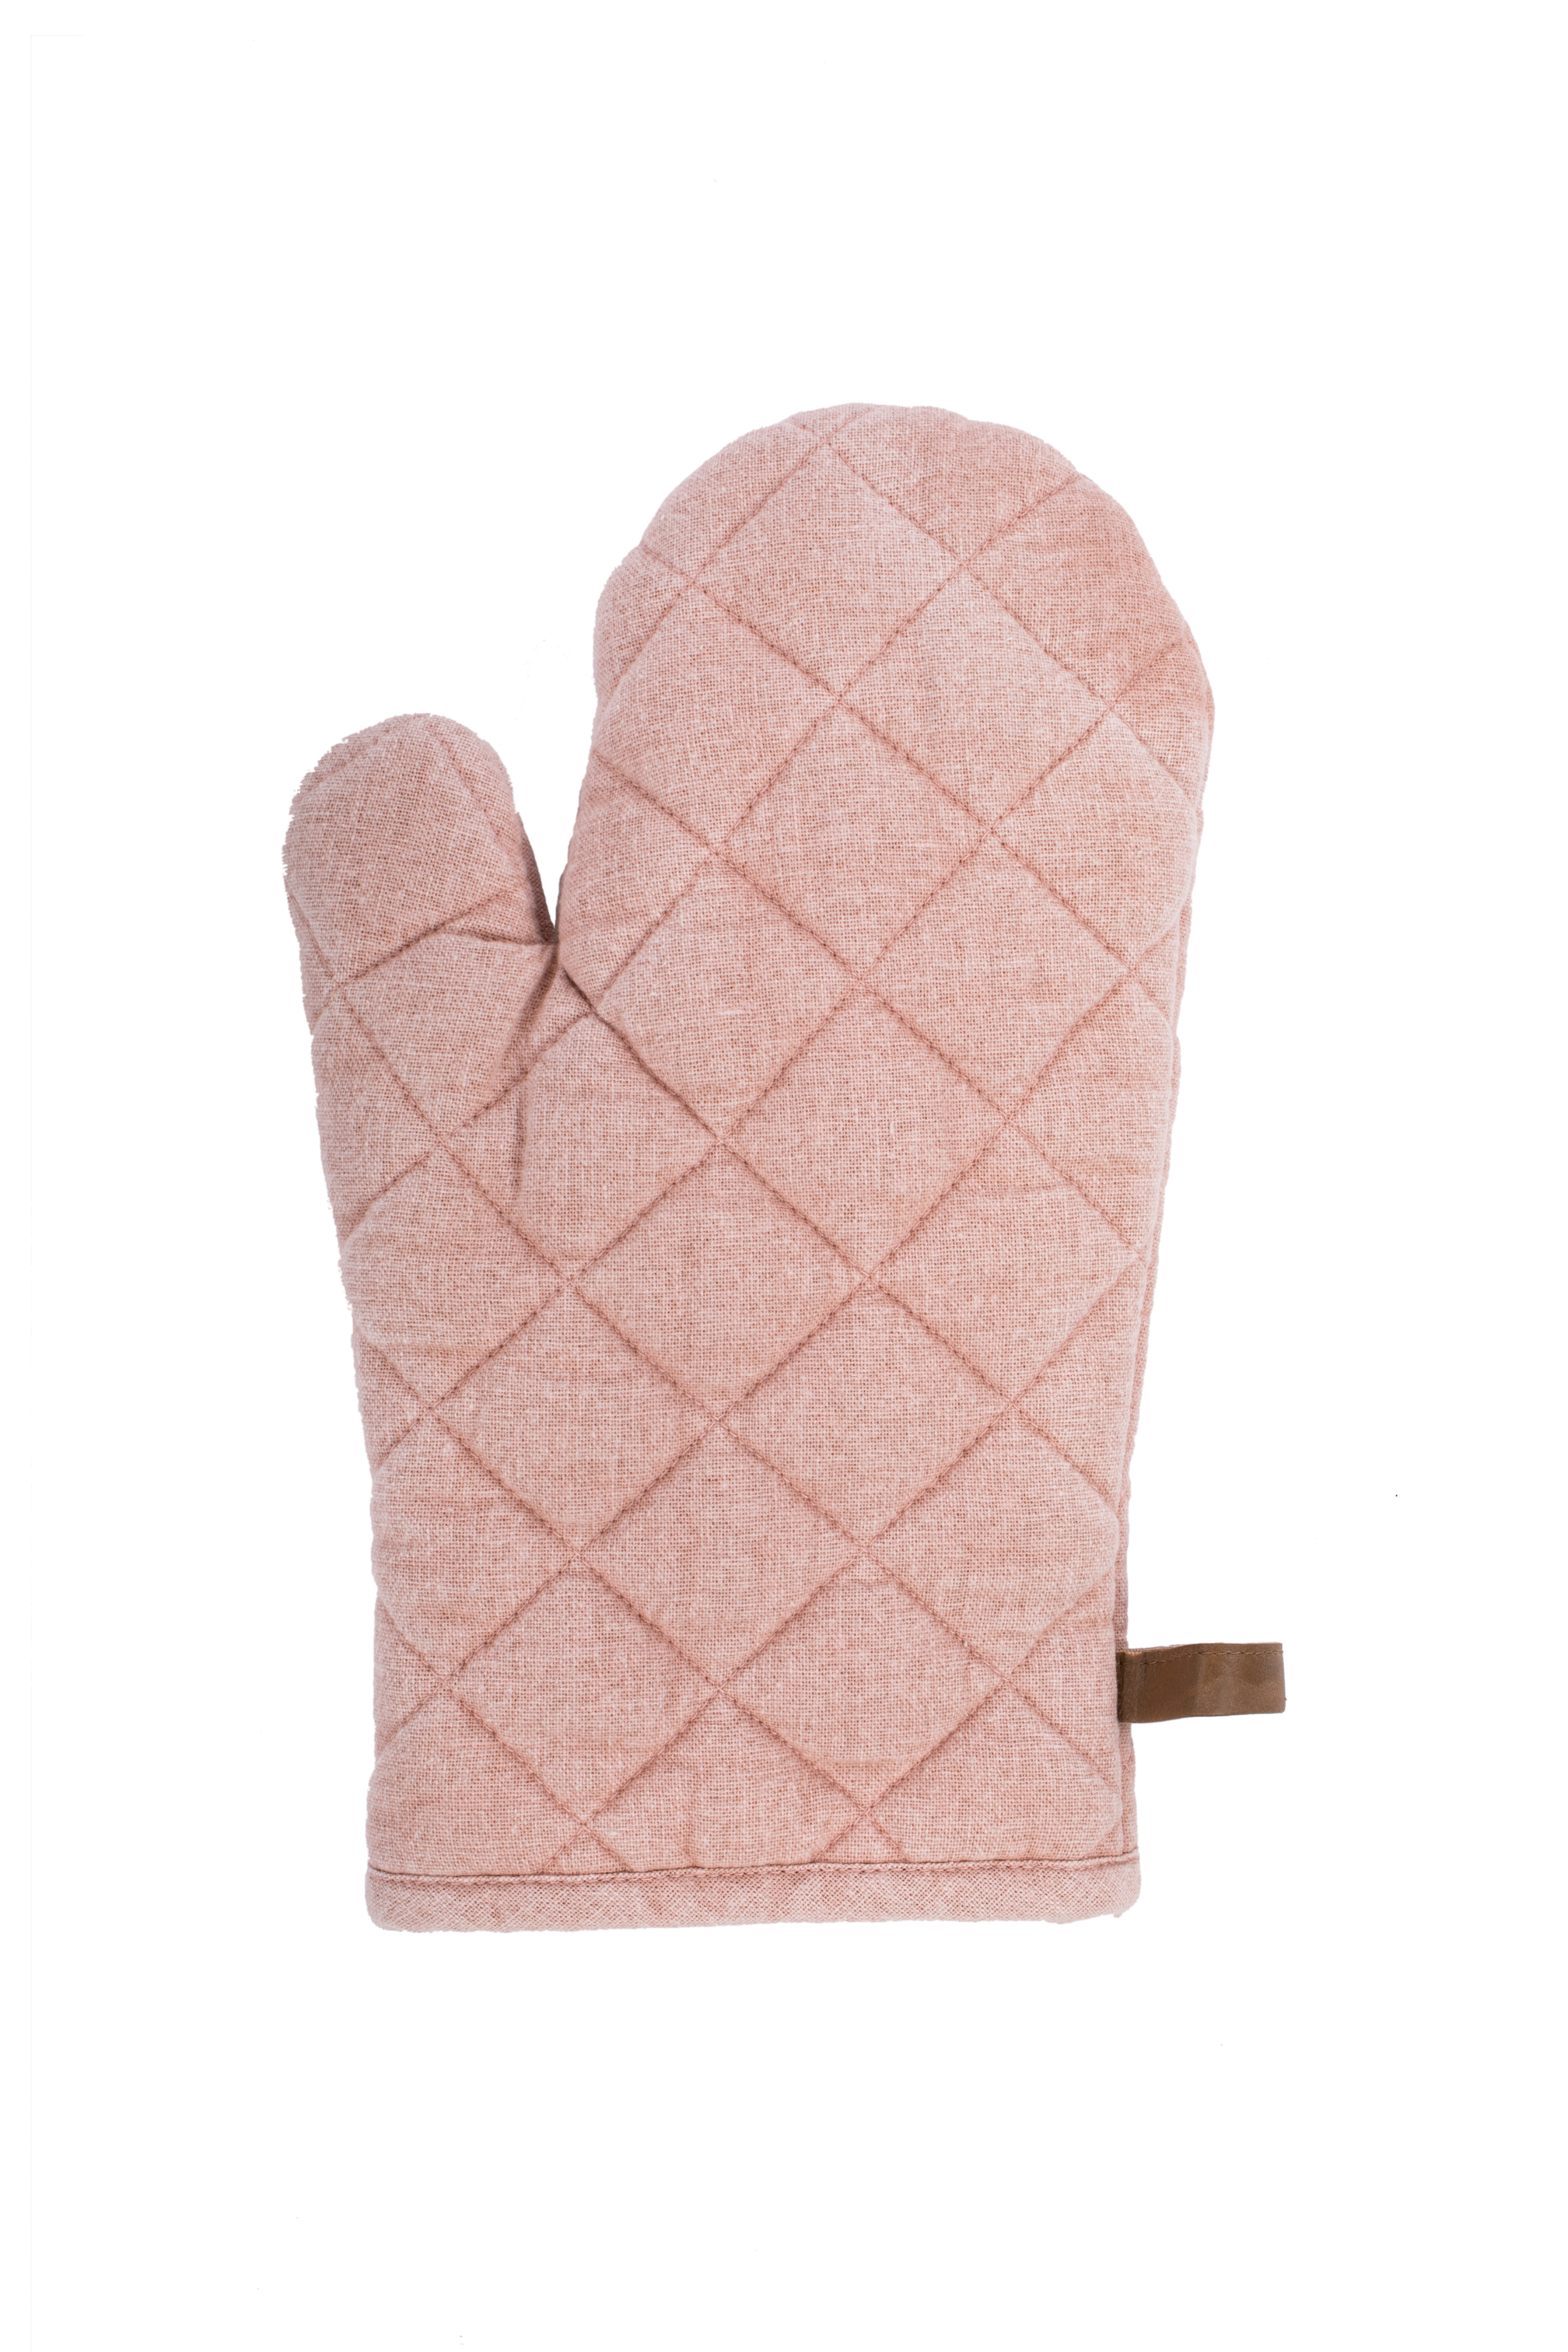 Glove  MYRNA 18x28cm, pink